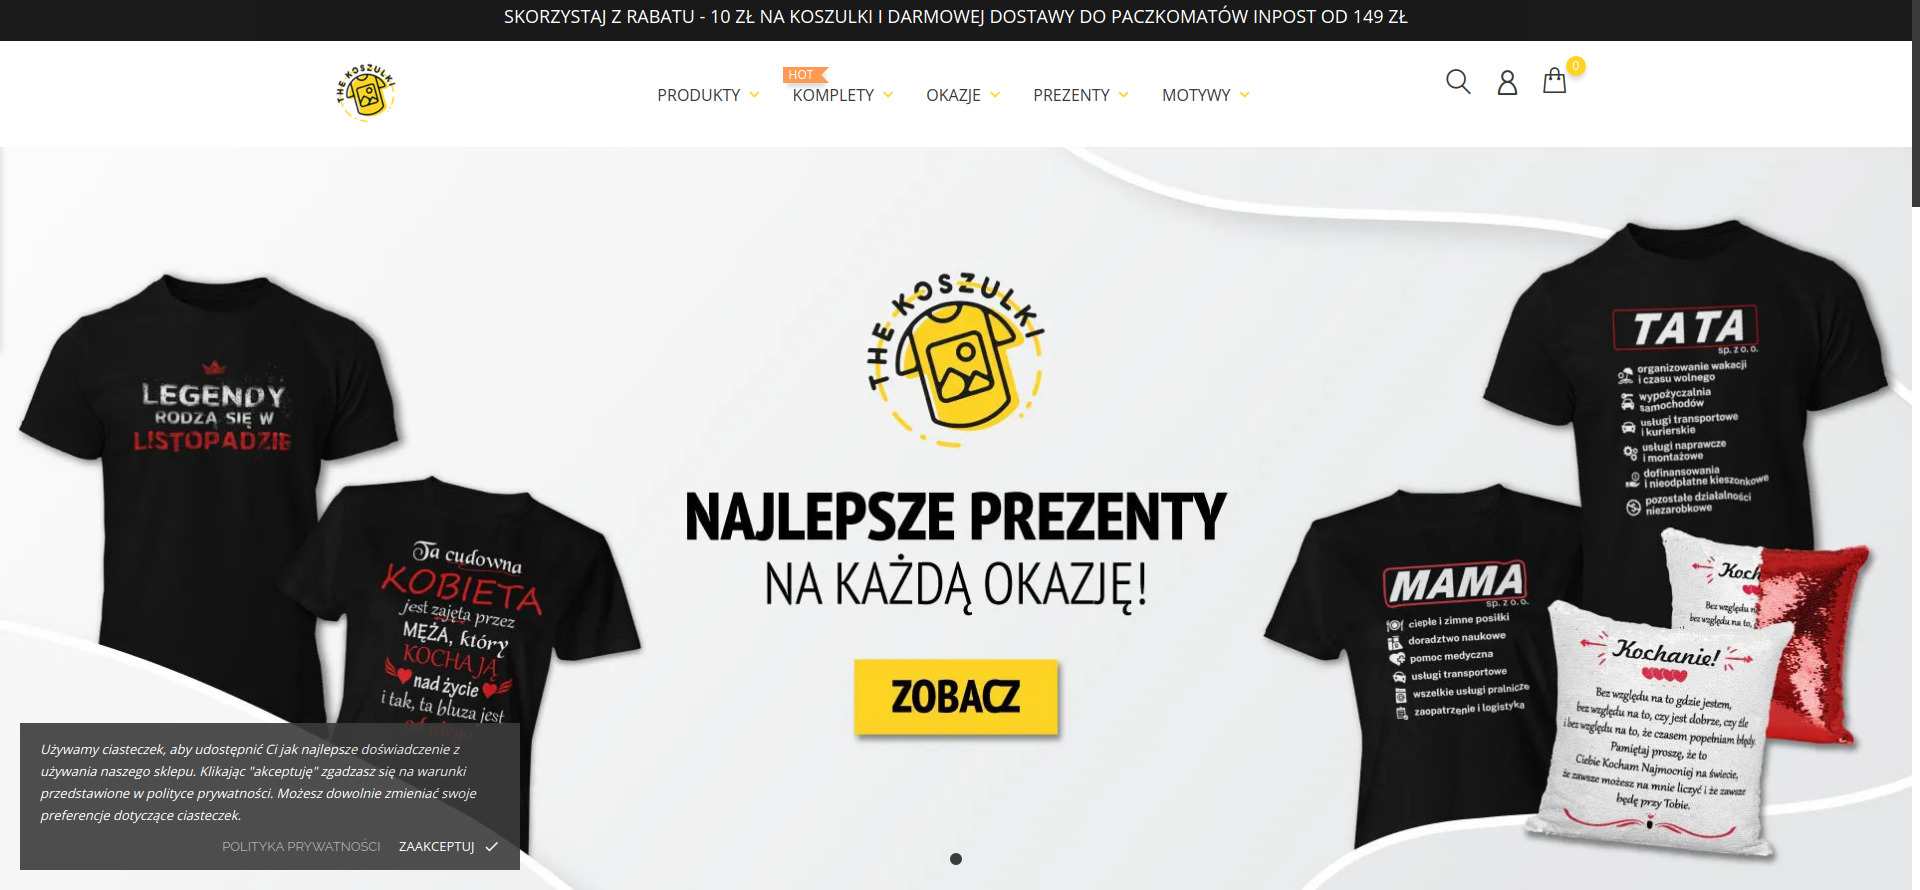 Koszulki.pl online